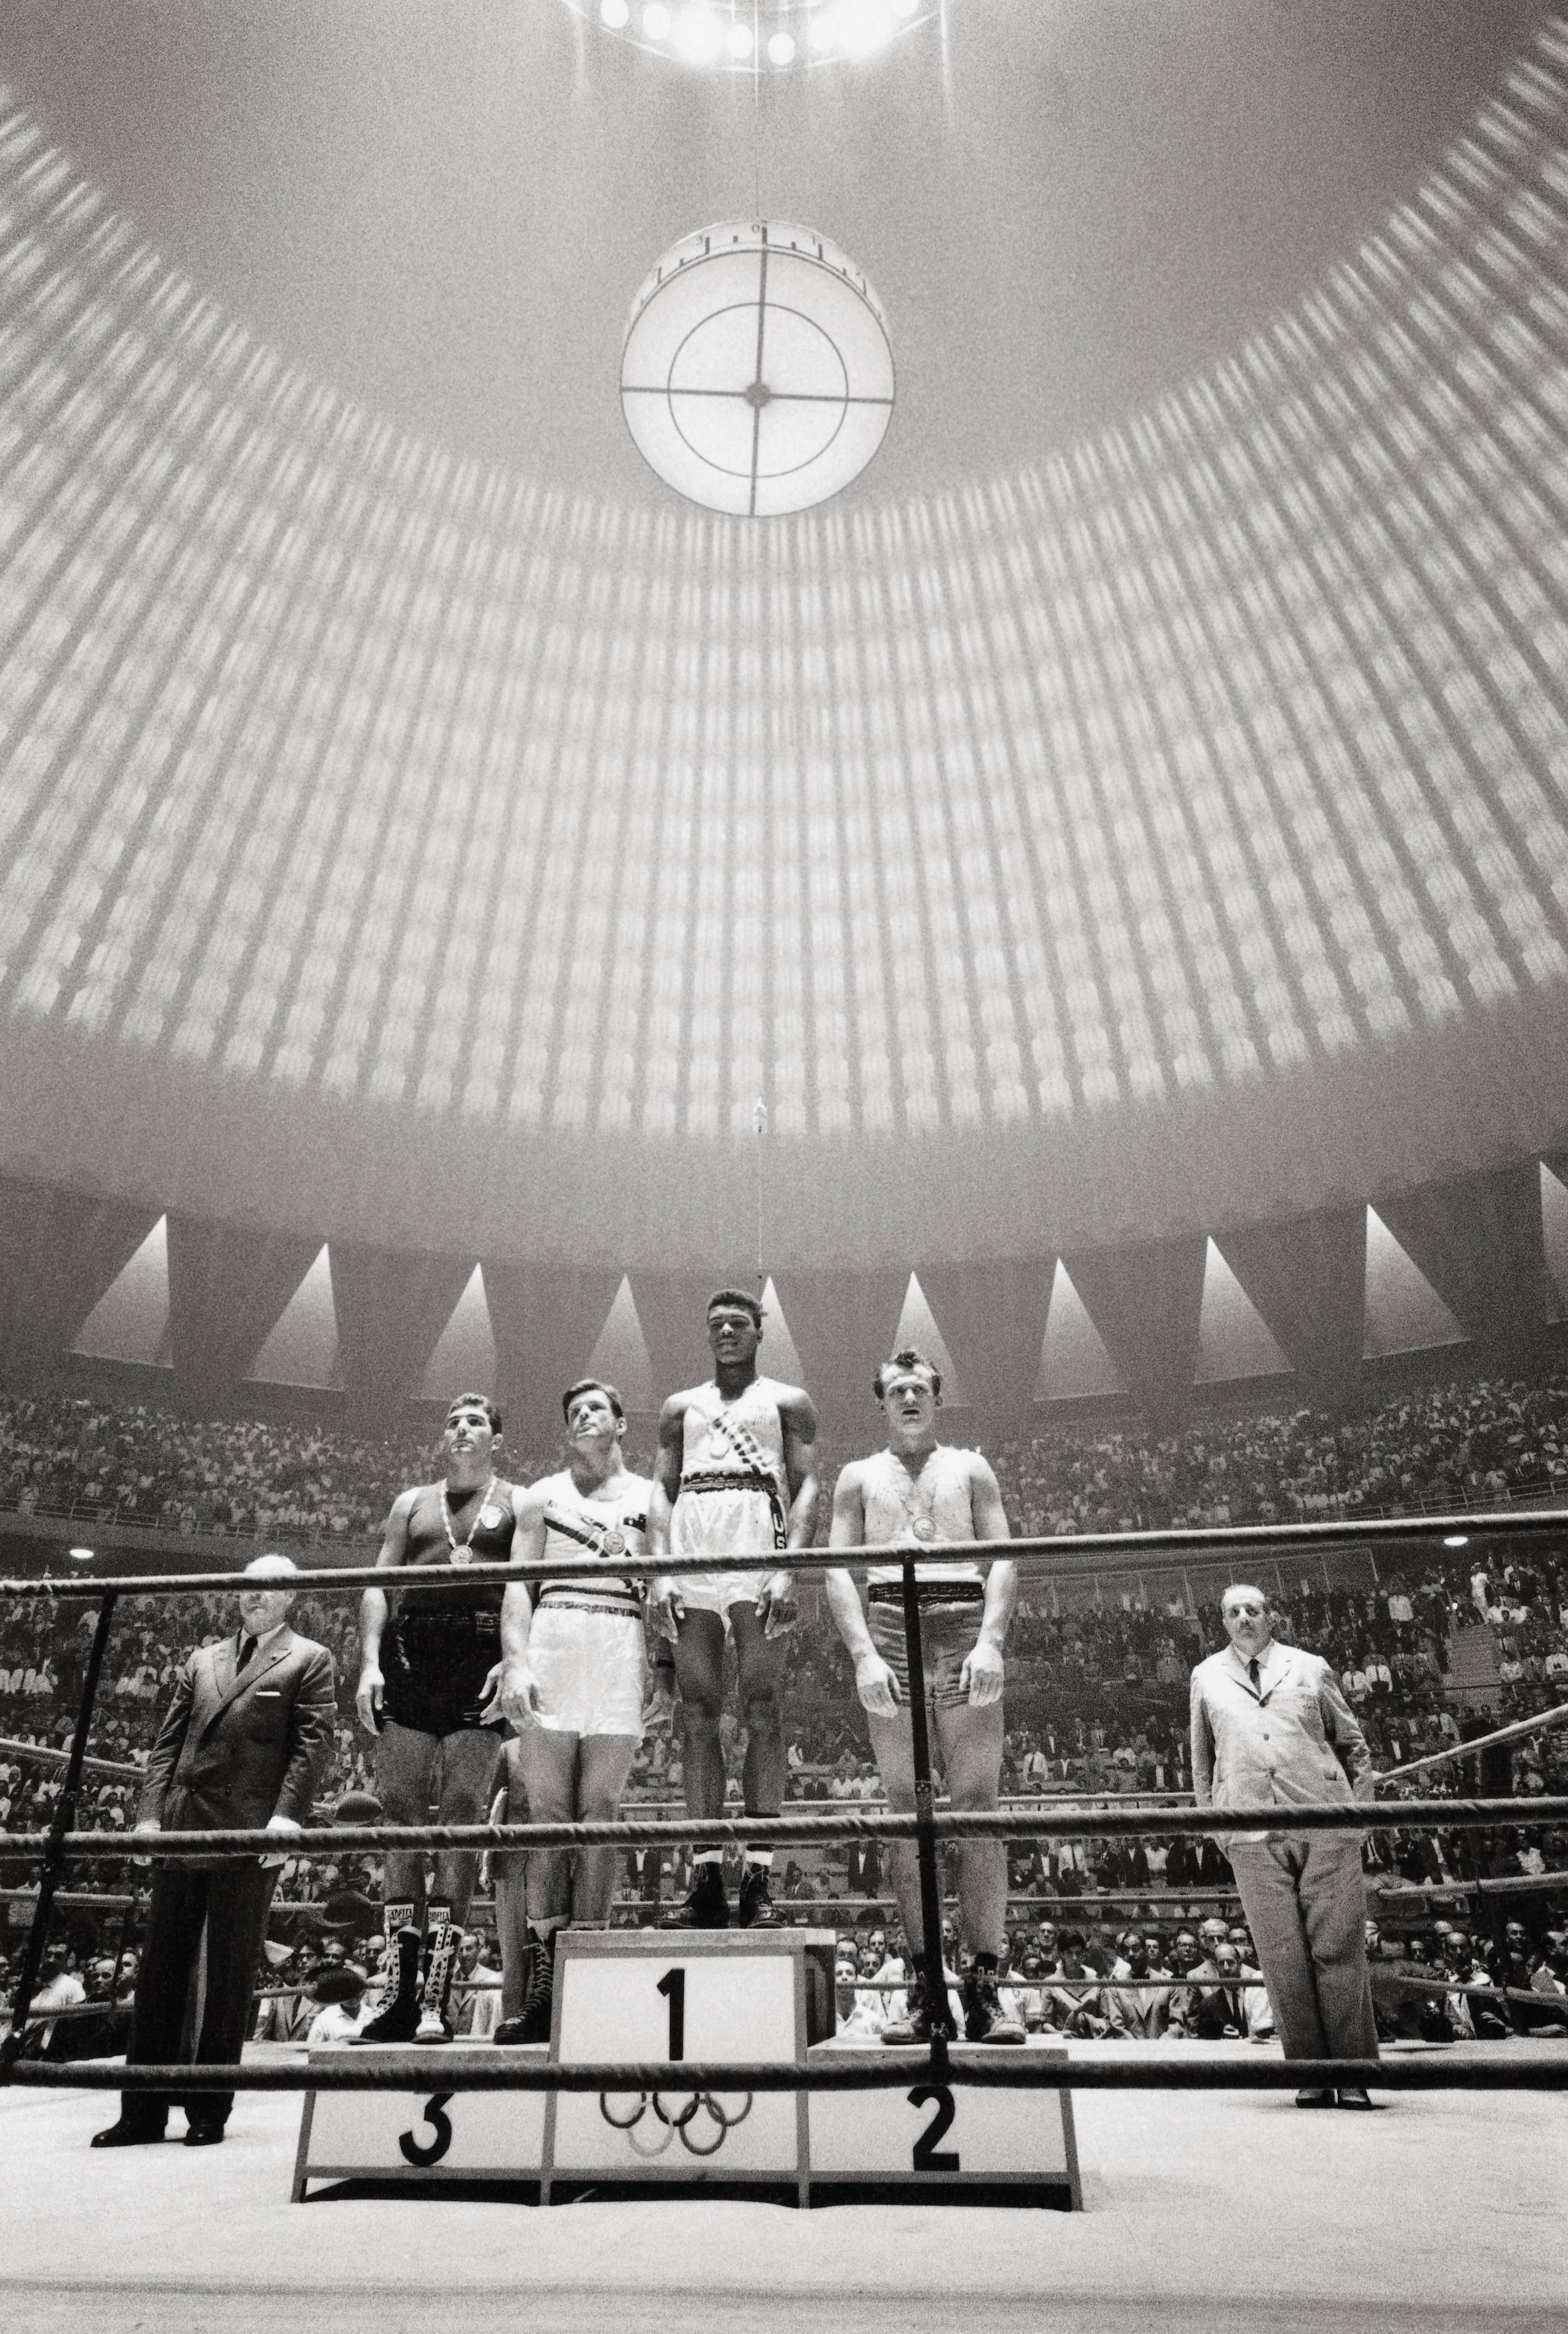 Black and White Photograph Marvin Newman - Les Jeux olympiques de Rome de 1960, argile de Cassius, photographie en noir et blanc, impression d'art